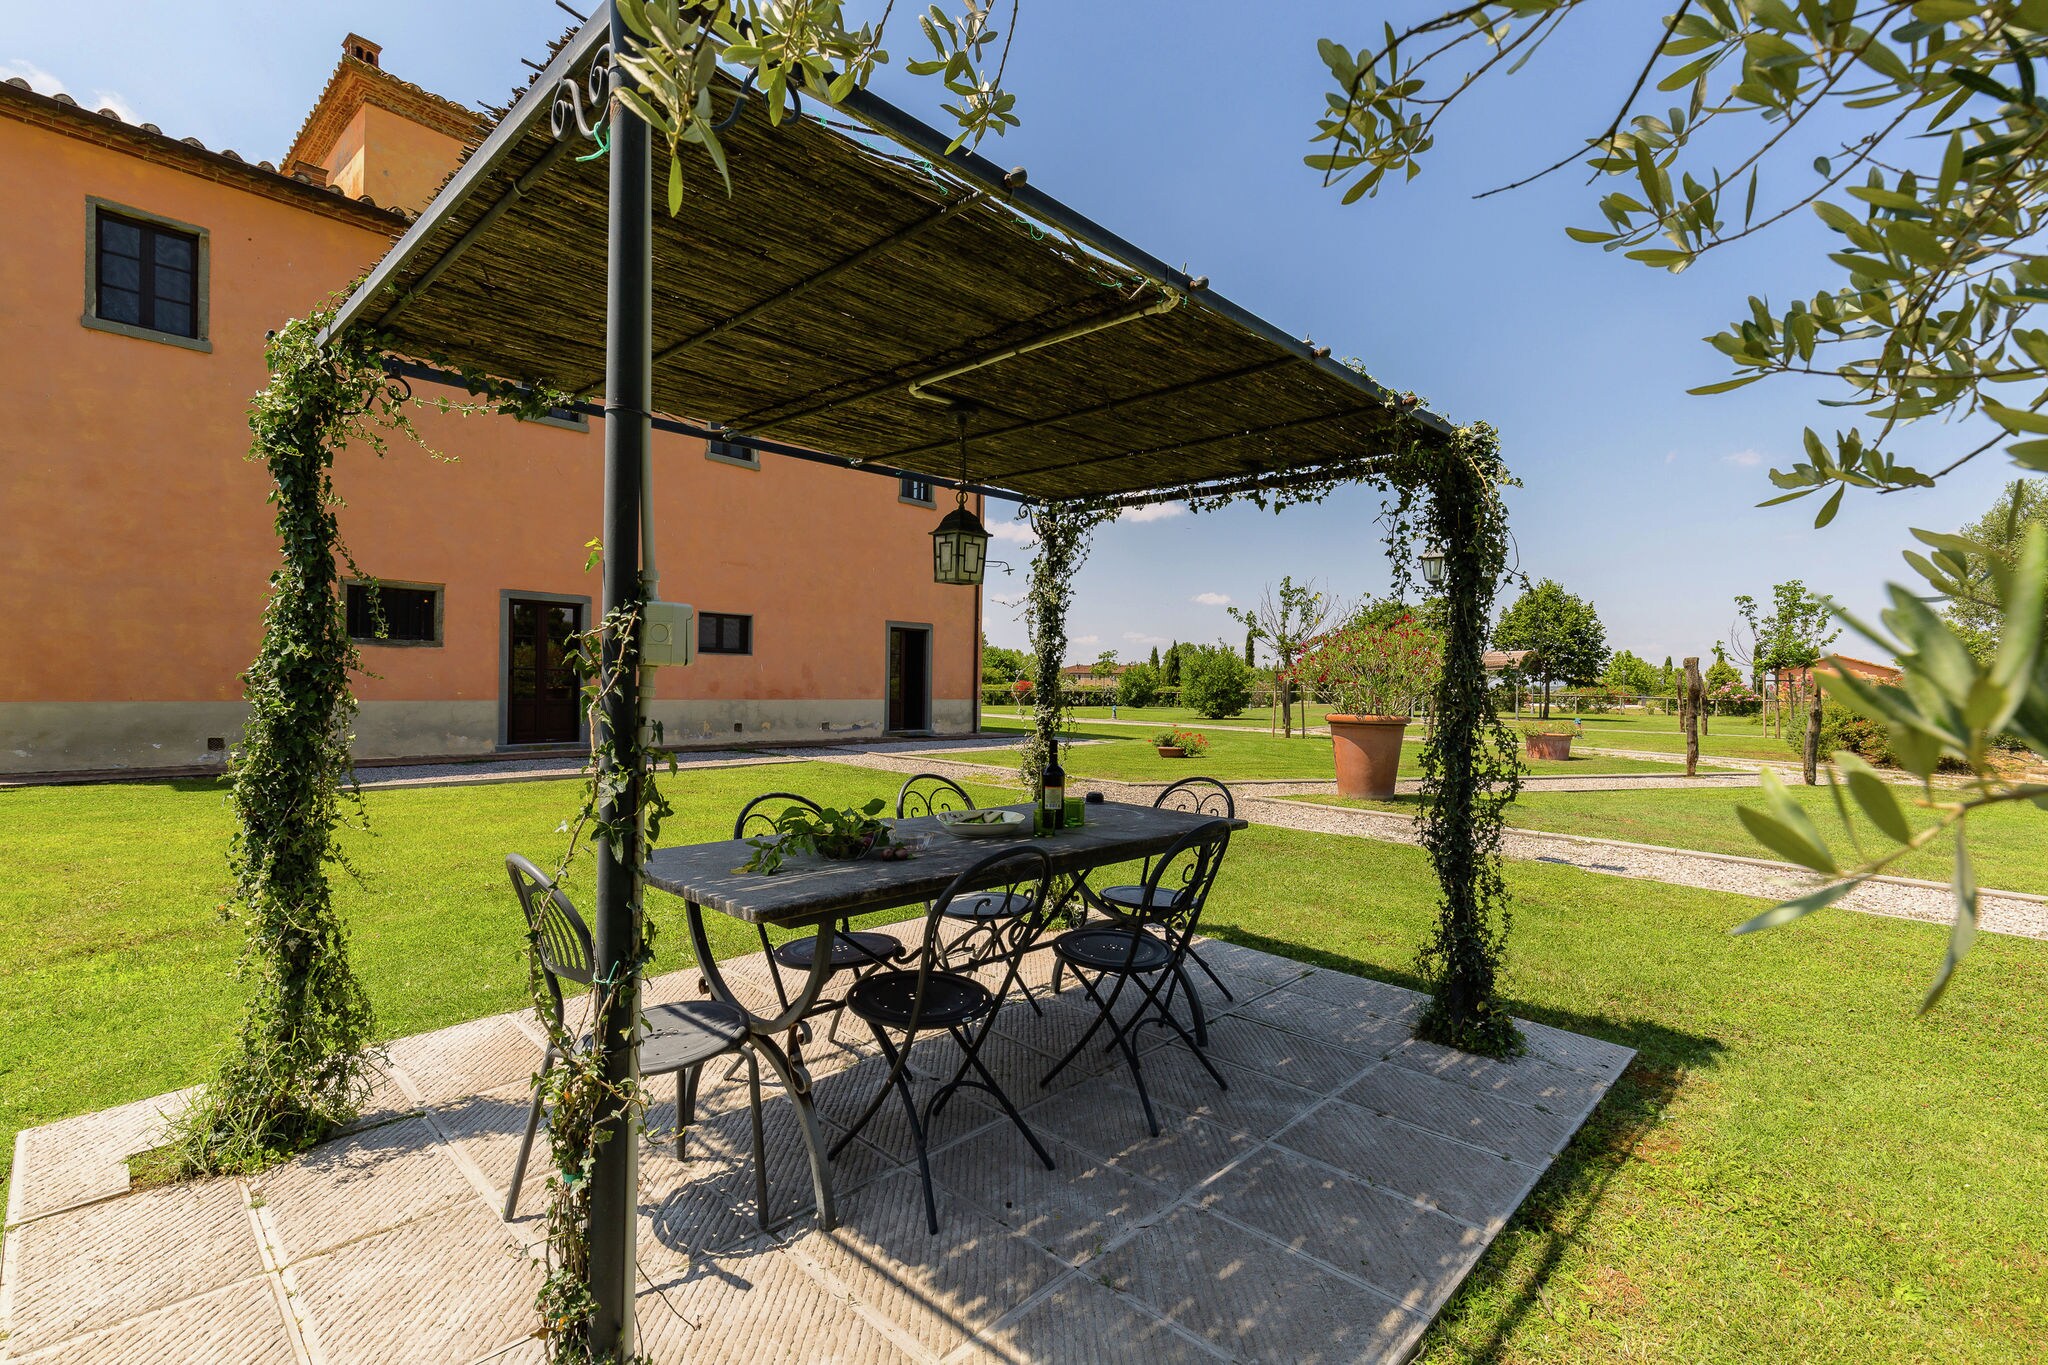 Elegantes Bauernhaus in Cortona mit Swimmingpool